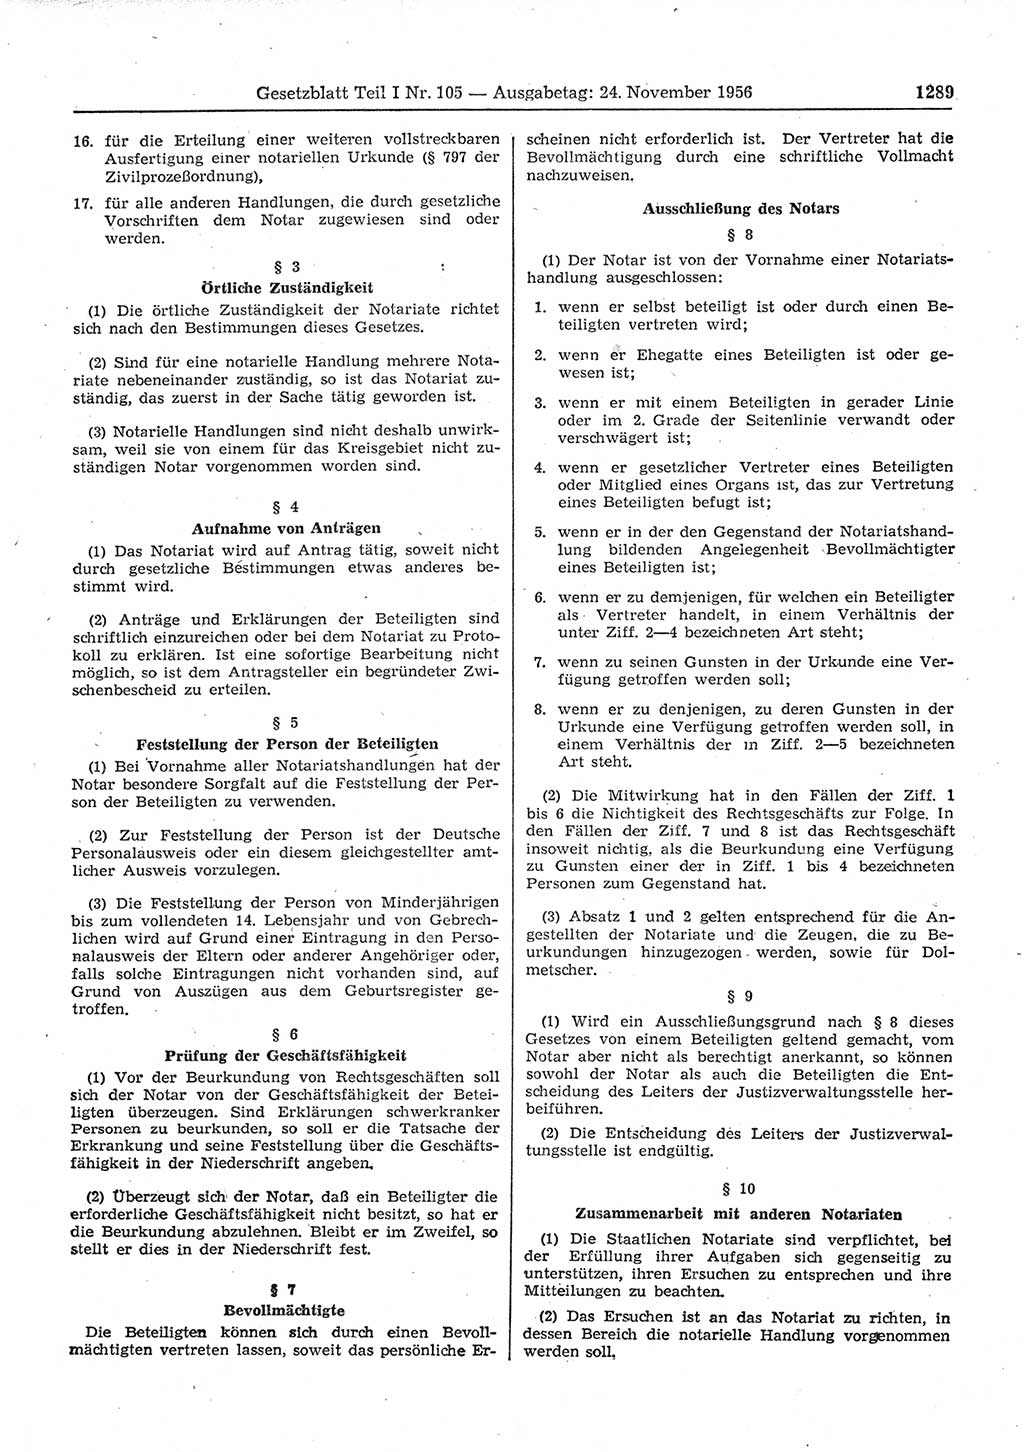 Gesetzblatt (GBl.) der Deutschen Demokratischen Republik (DDR) Teil Ⅰ 1956, Seite 1289 (GBl. DDR Ⅰ 1956, S. 1289)